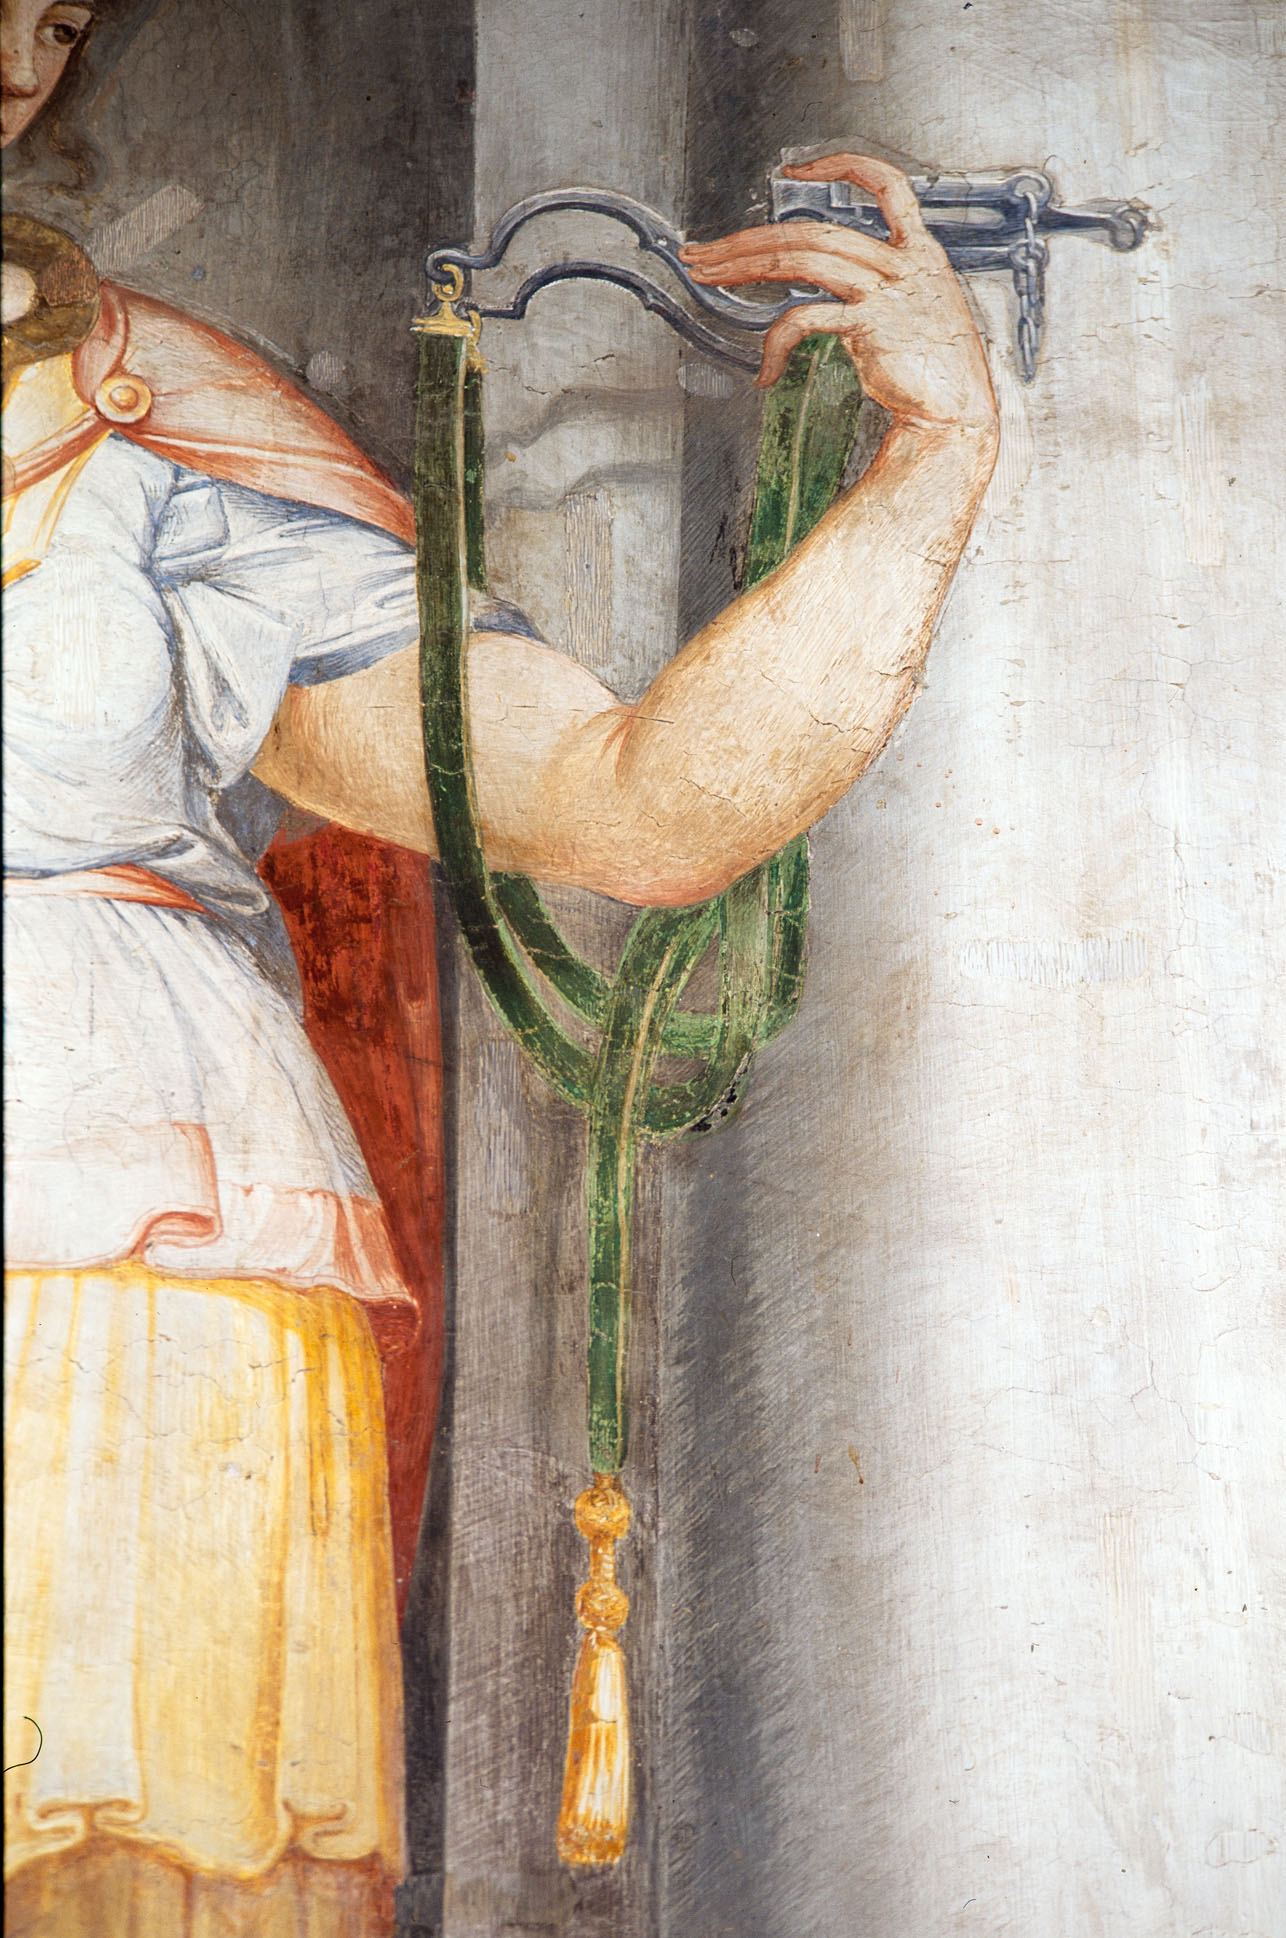 Prudenza (dipinto murale, elemento d'insieme) di Siciolante Girolamo (attribuito), Bonaccorsi Pietro detto Perin del Vaga (sec. XVI) 